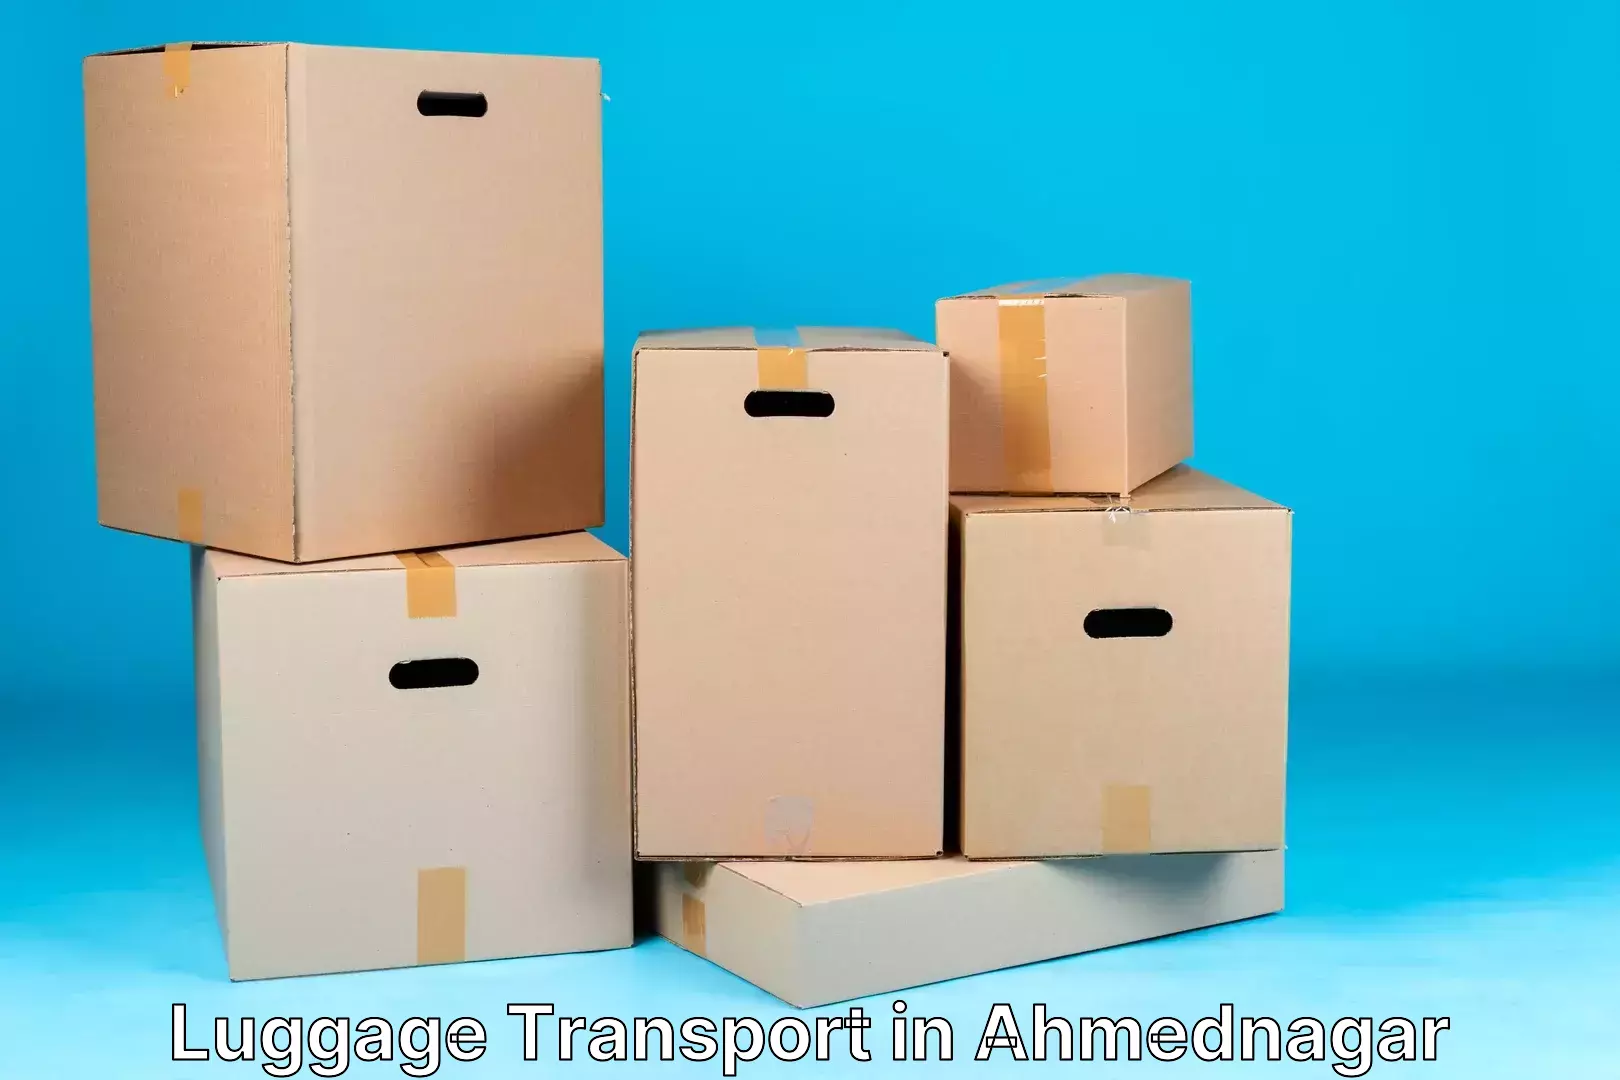 Luggage shipment processing in Ahmednagar